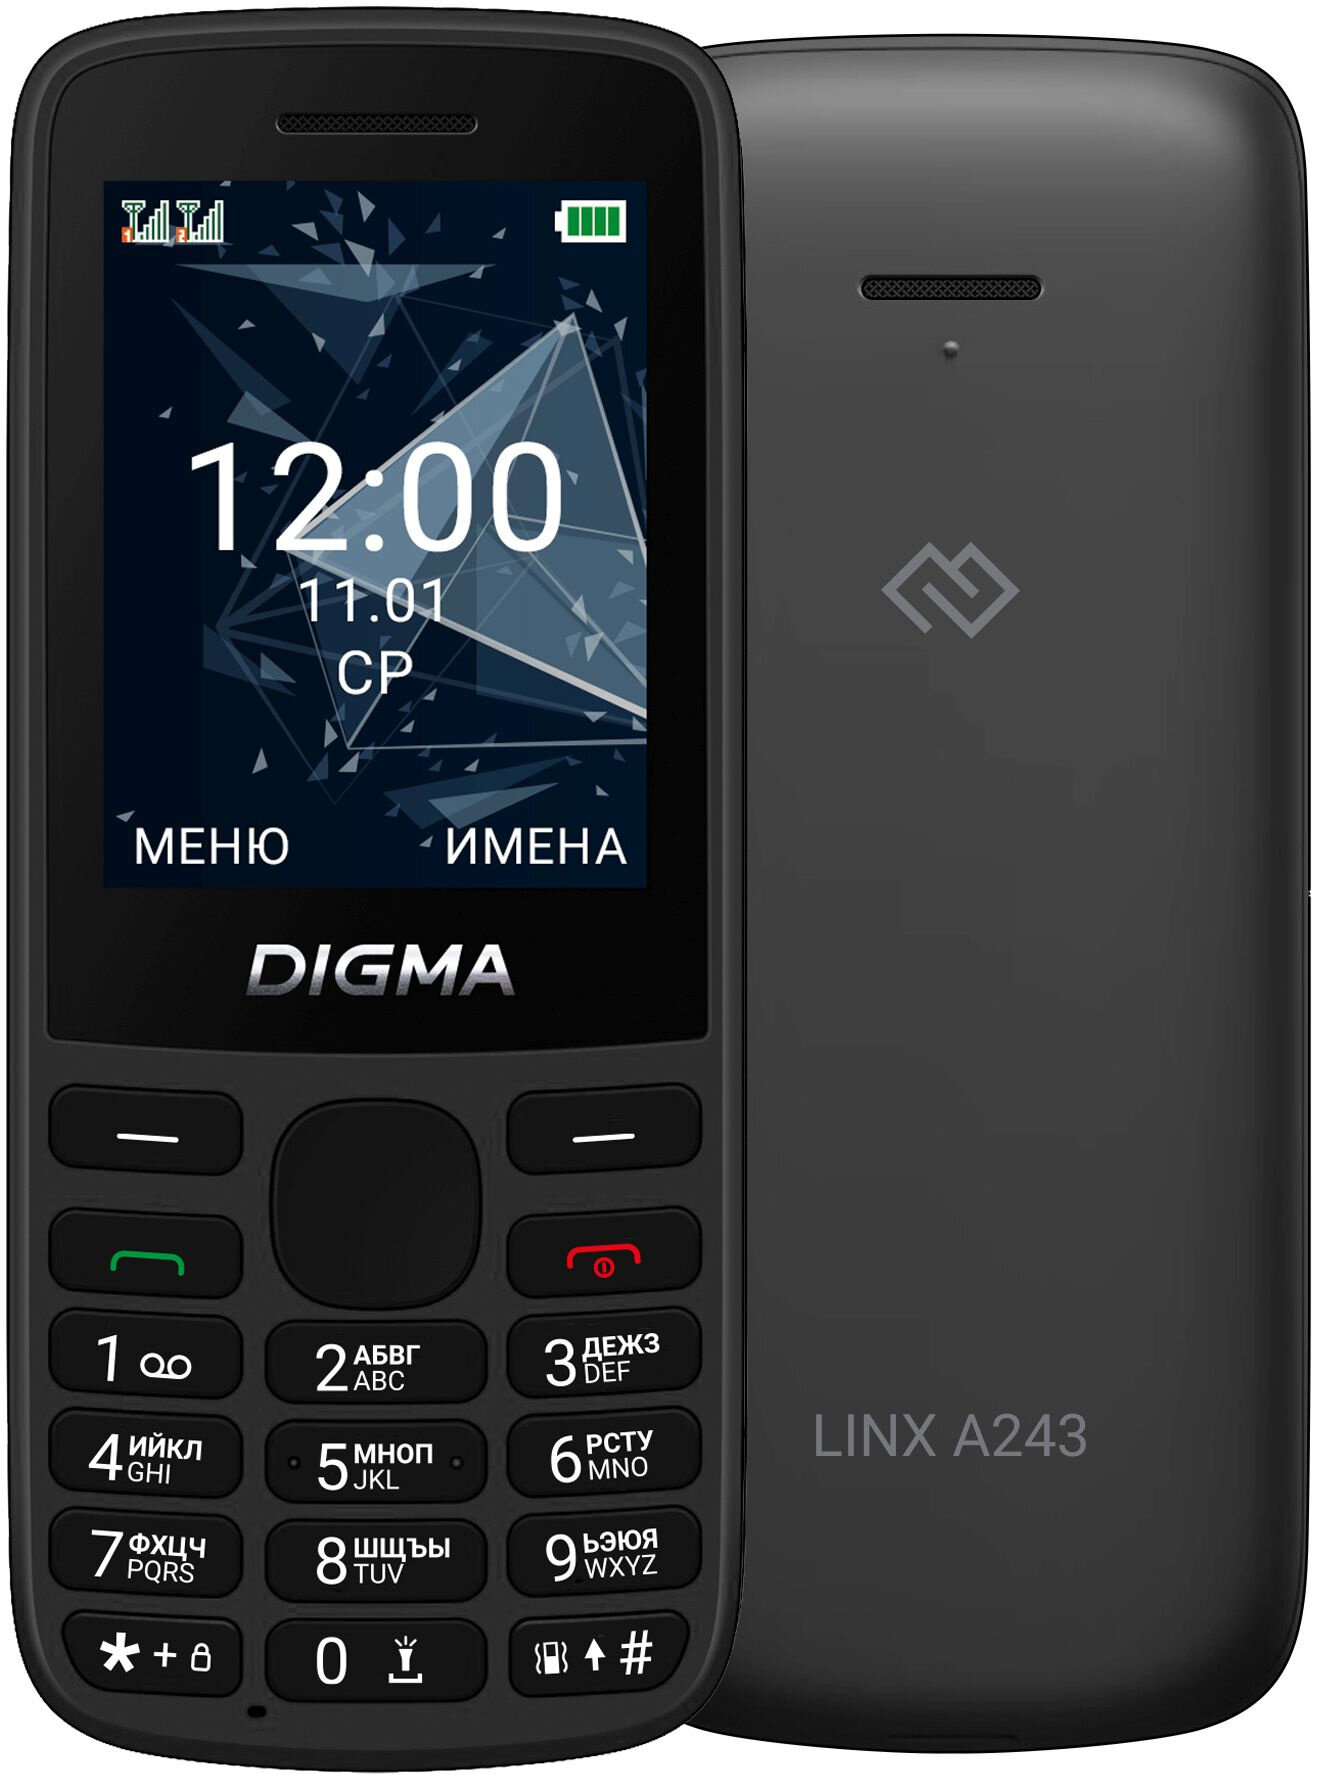 Мобильный телефон Digma 1888900 Linx 32Mb 32Mb черный моноблок 2Sim 2.4" 240x320 GSM900/1800 GSM1900 - фото №1